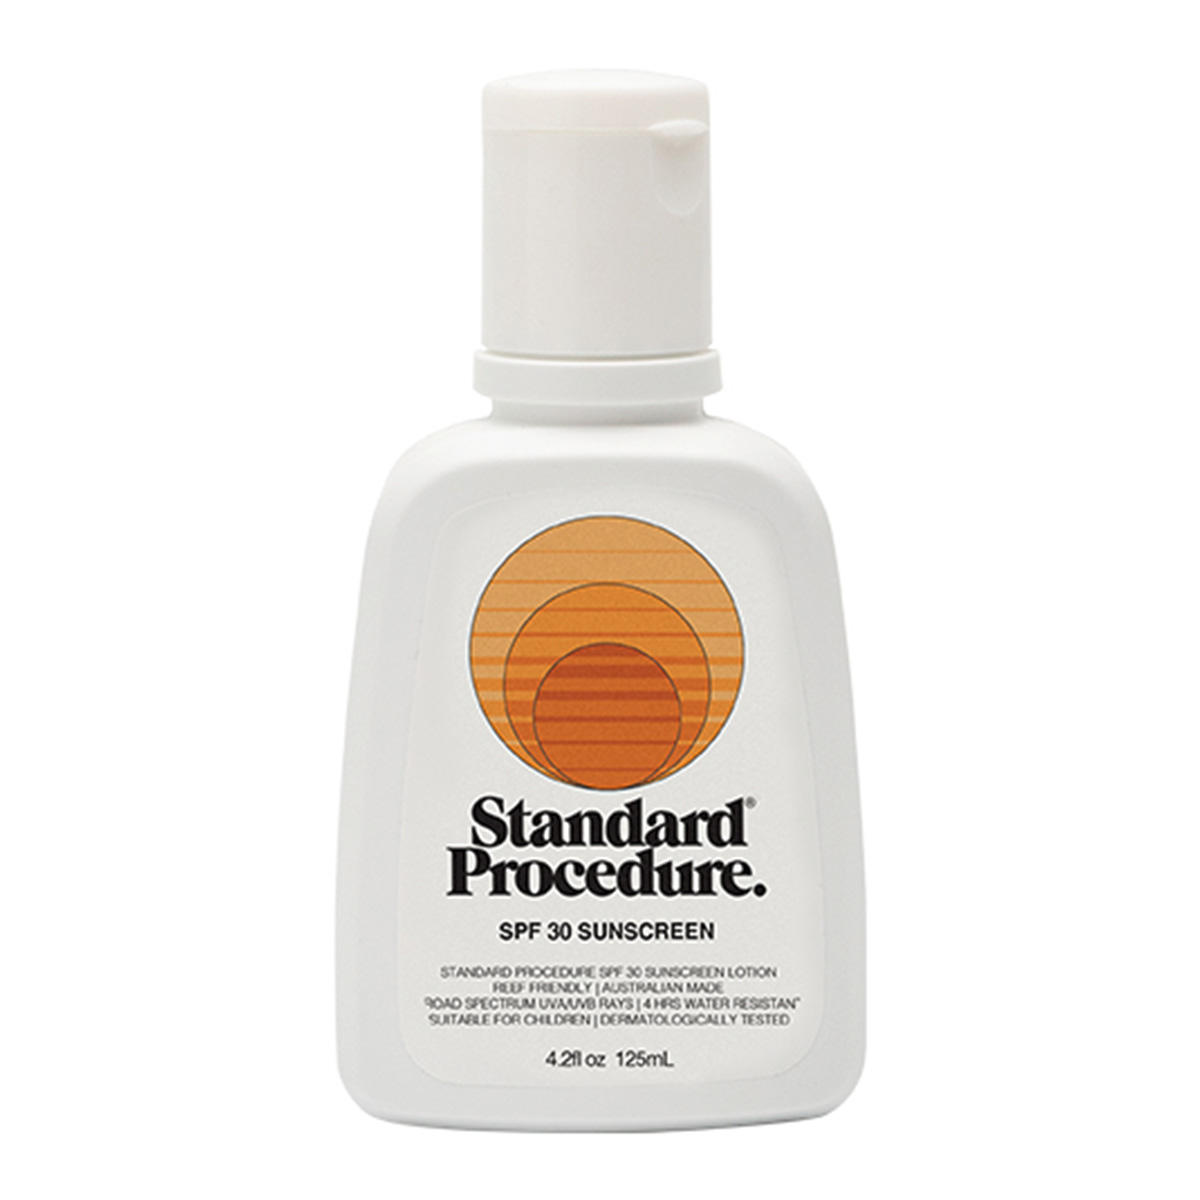 Standard Procedure SPF 30 Sunscreen  - 1